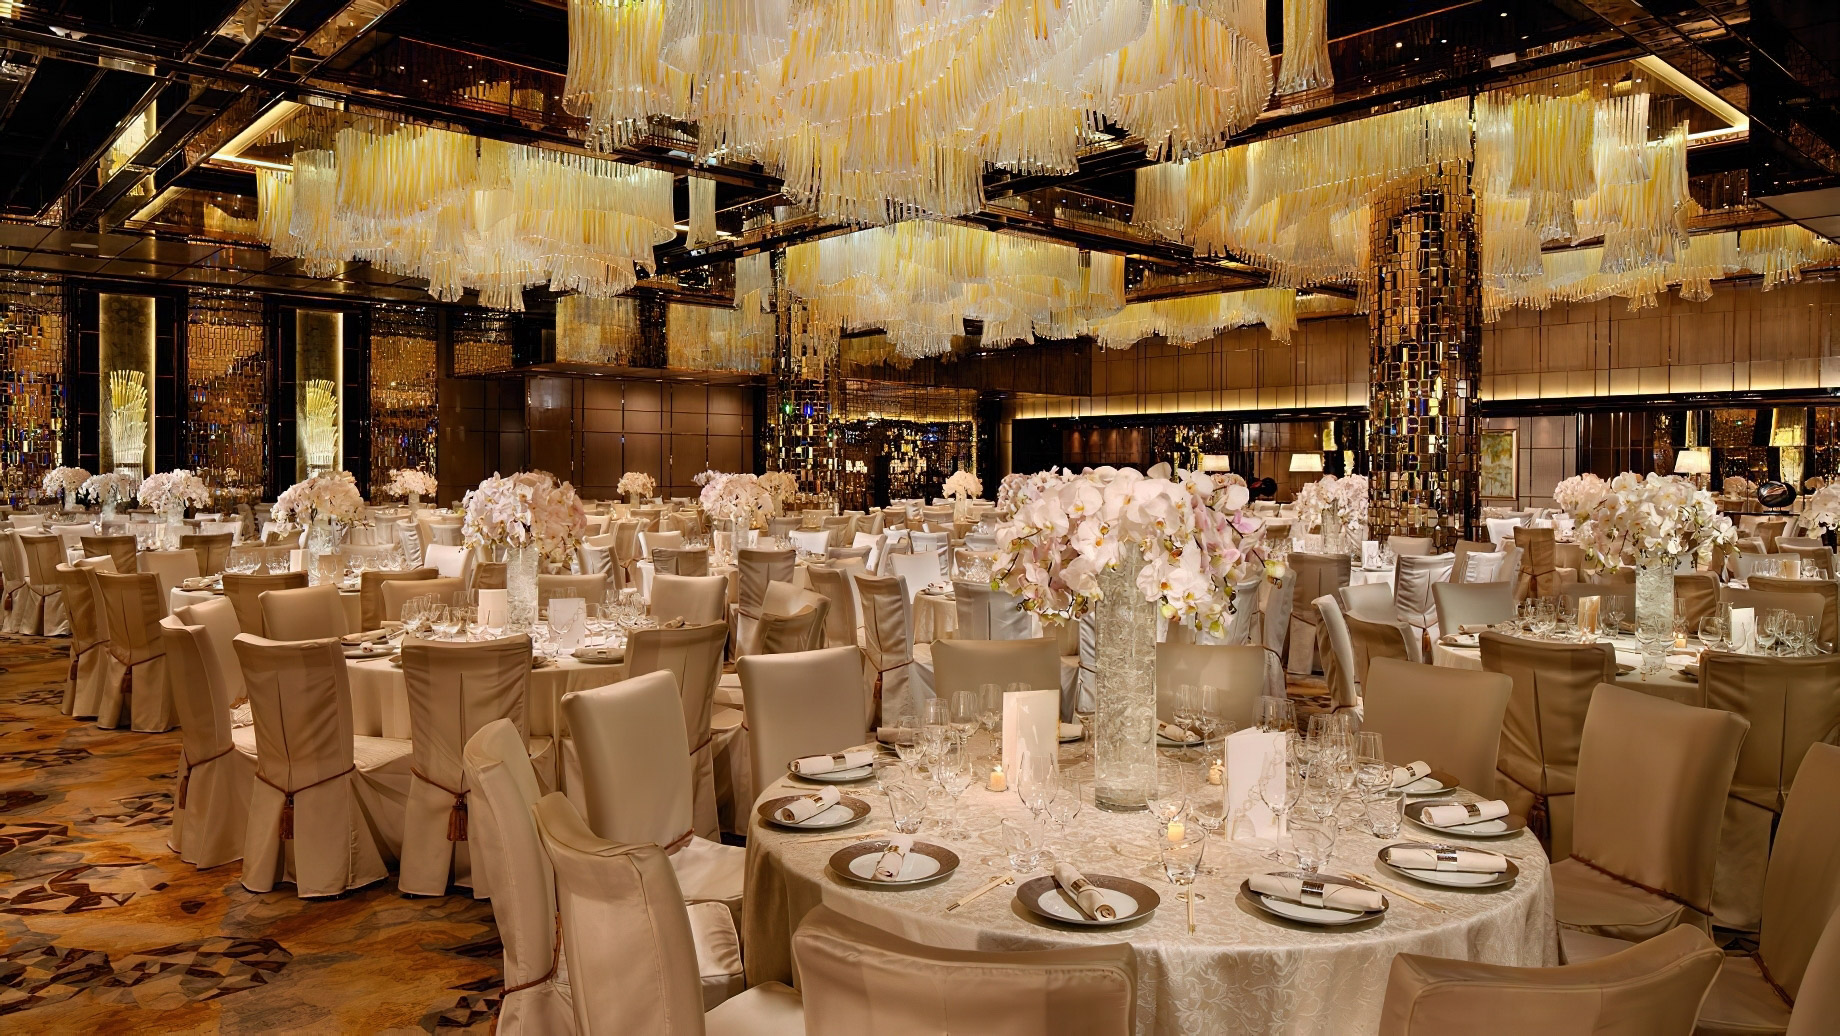 The Ritz-Carlton, Hong Kong Hotel – West Kowloon, Hong Kong – Ballroom